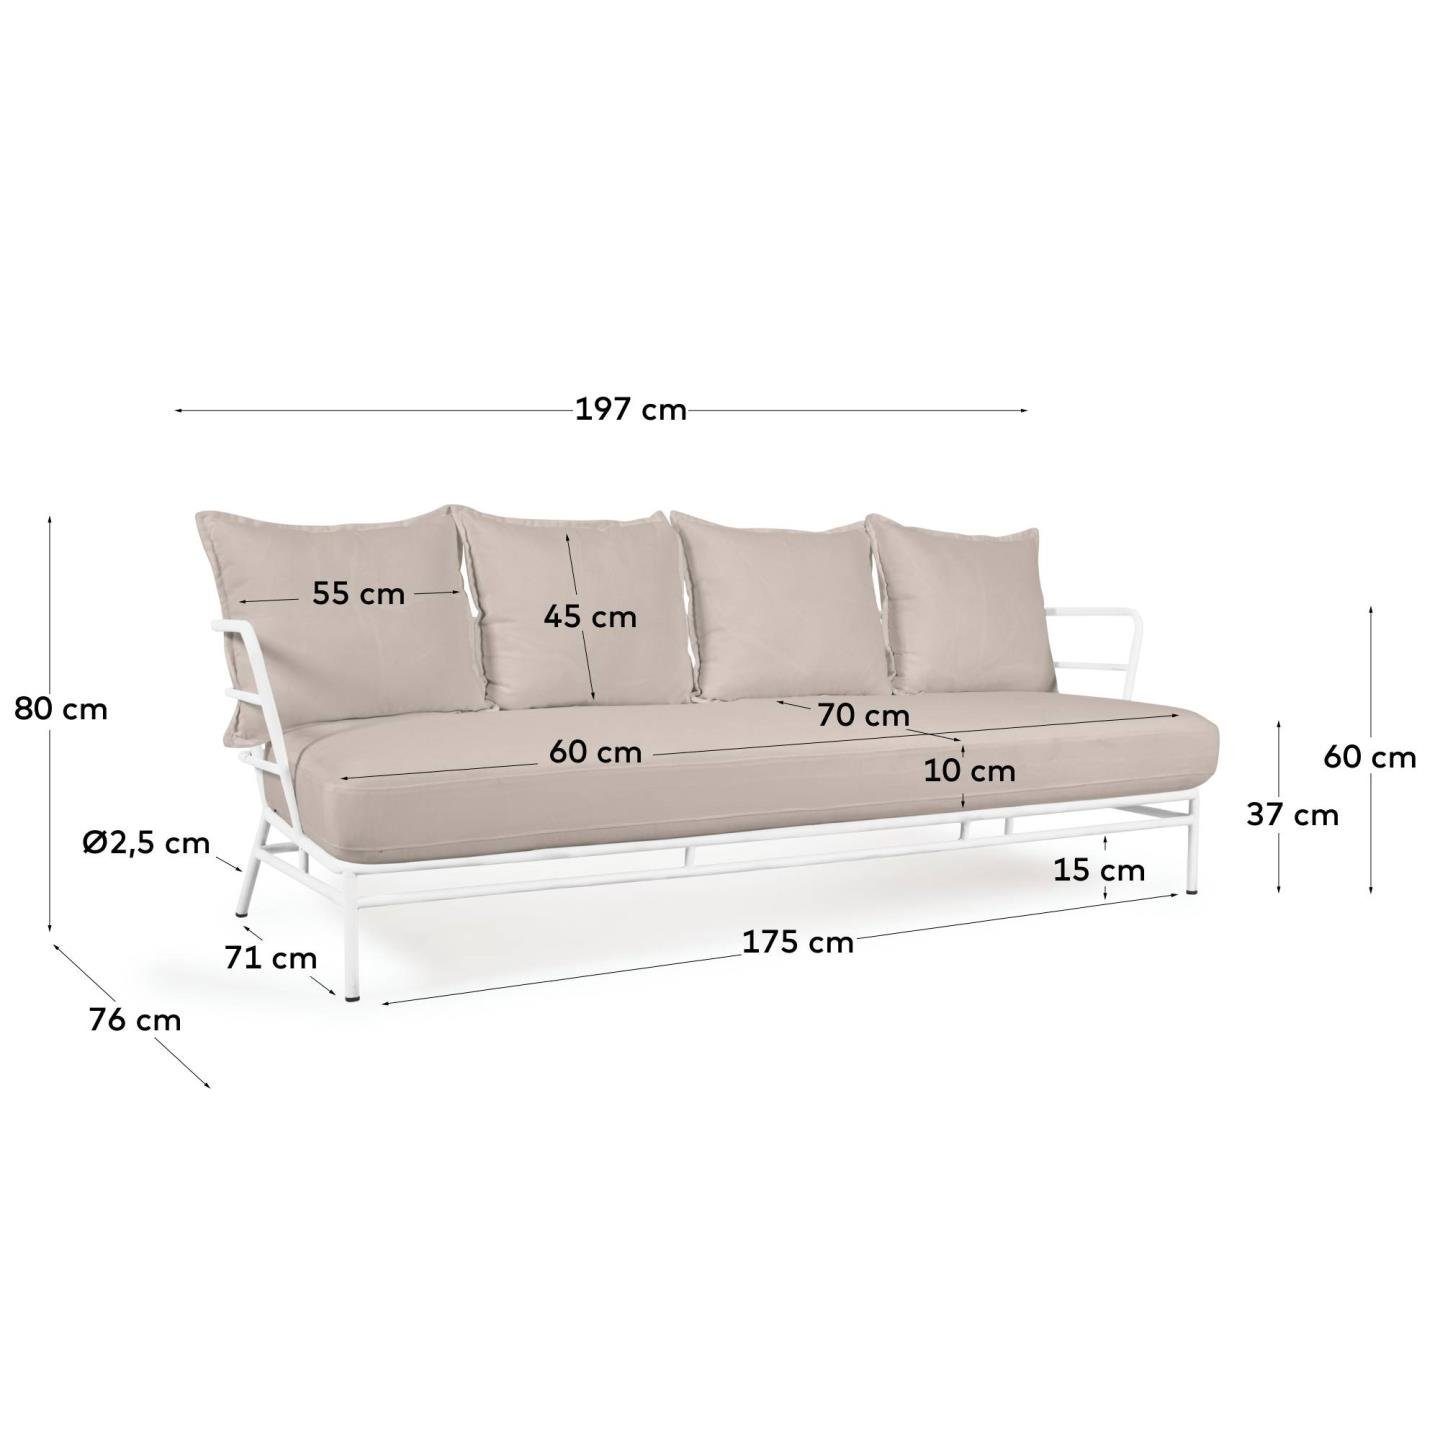 Sofa Sofa Mareluz Stahl Couch 60 197 cm Wohnzimmern 3-Sitzer x x Natur24 75